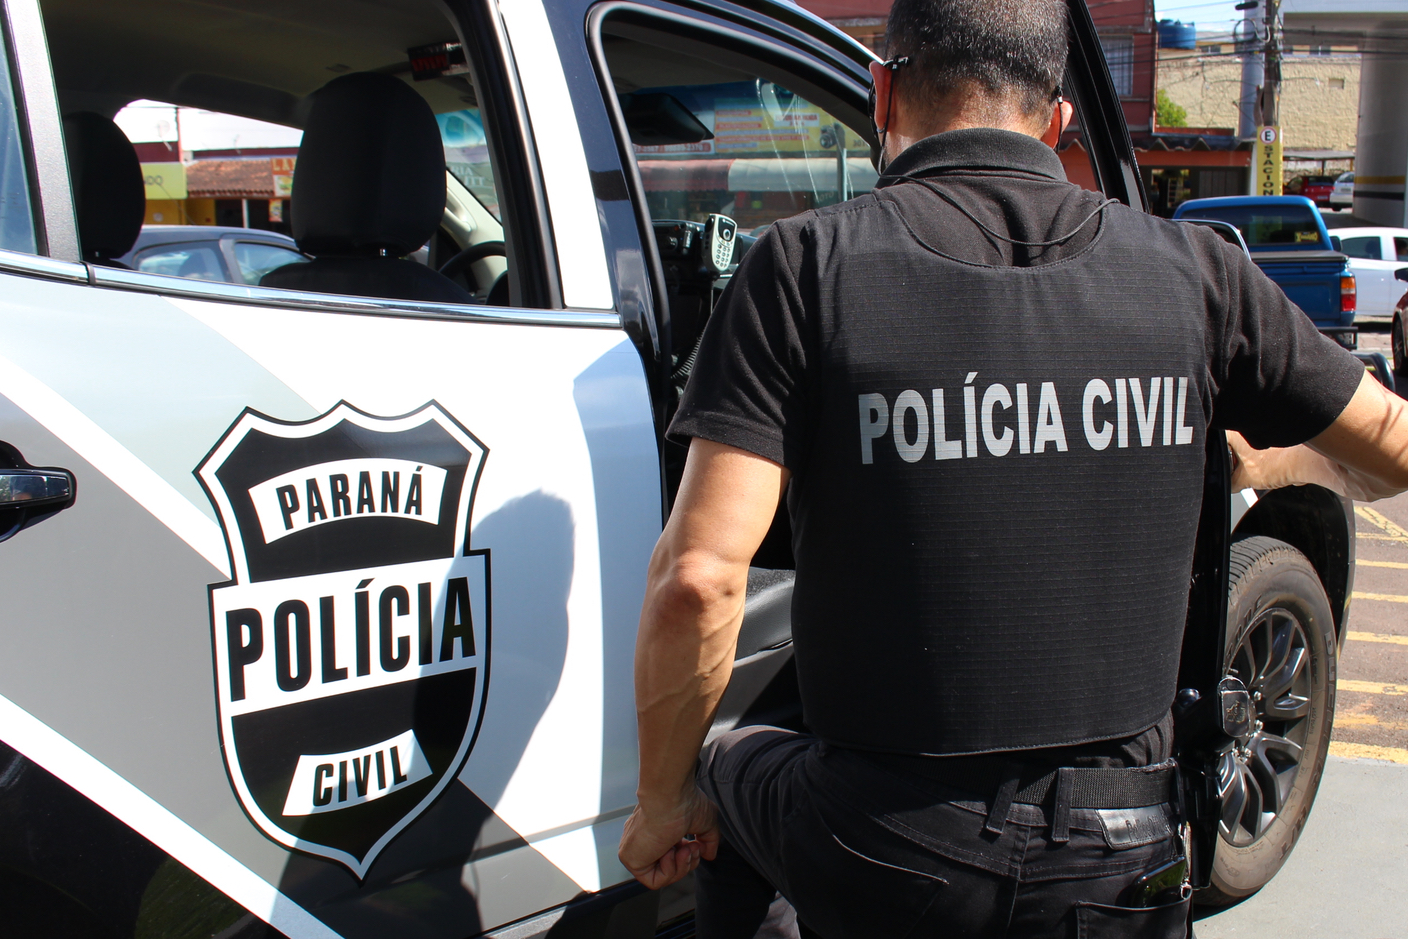  Motorista é autuado em Curitiba pelo crime de injúria eleitoral